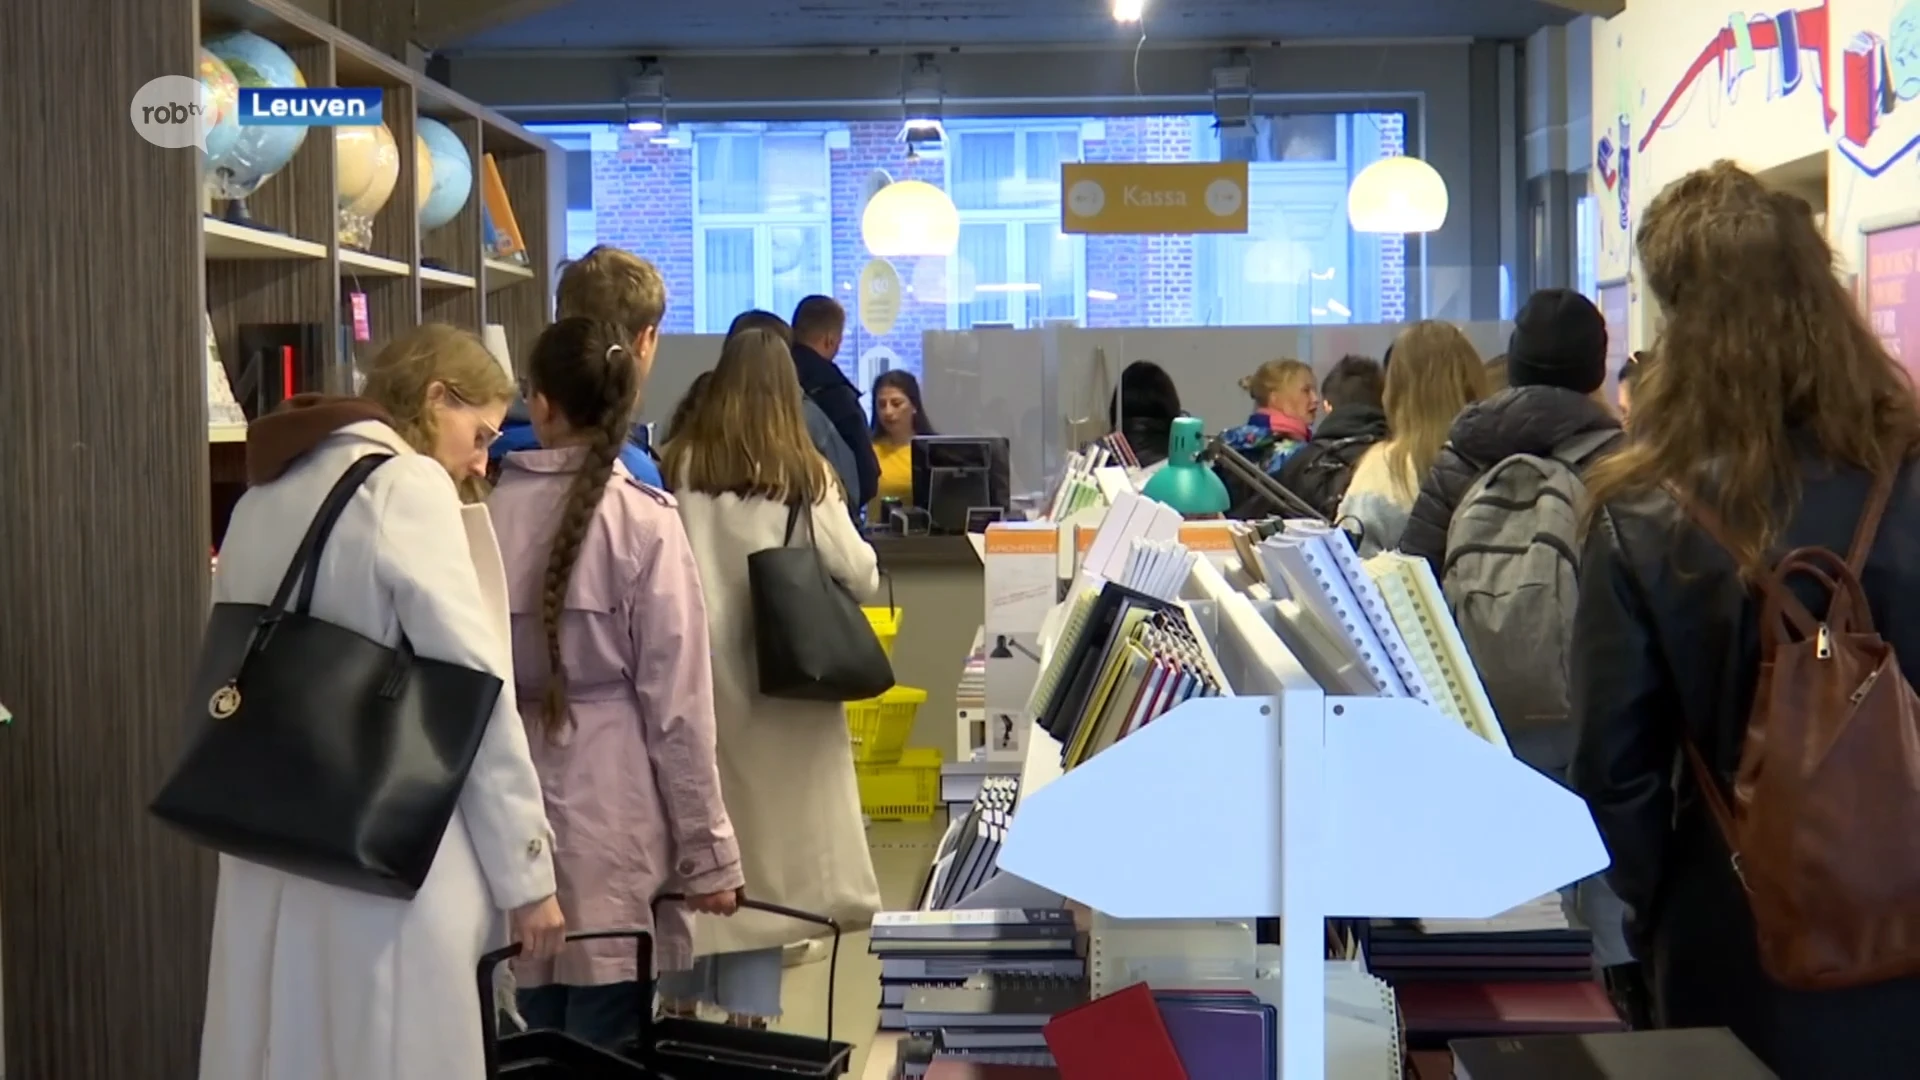 Op bezoek bij de Acco in eerste week academiejaar: "Papieren handboeken blijven populair"